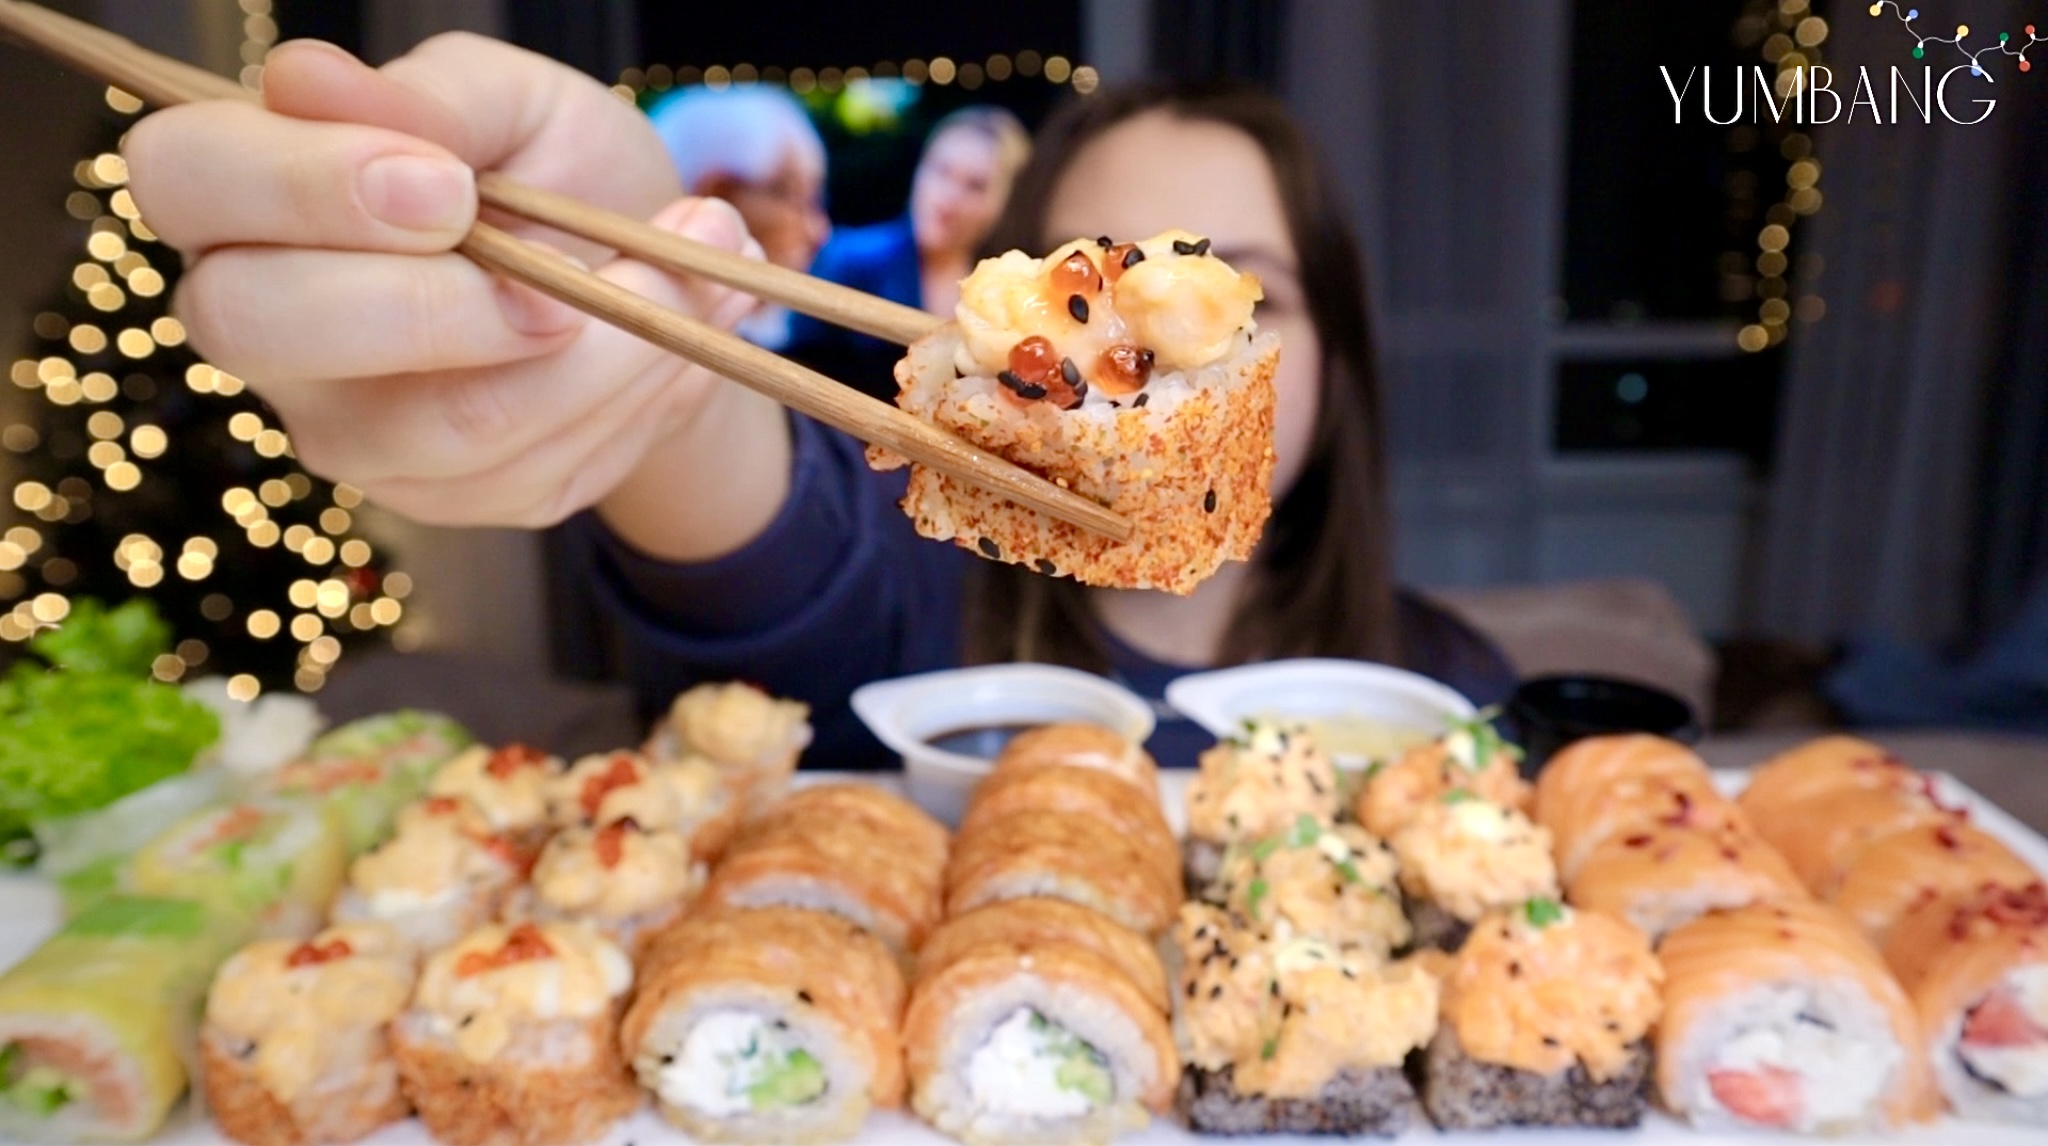 МУКБАНГ как исполнить мечту роллы с клубникой и карамелью суши mukbang sushi